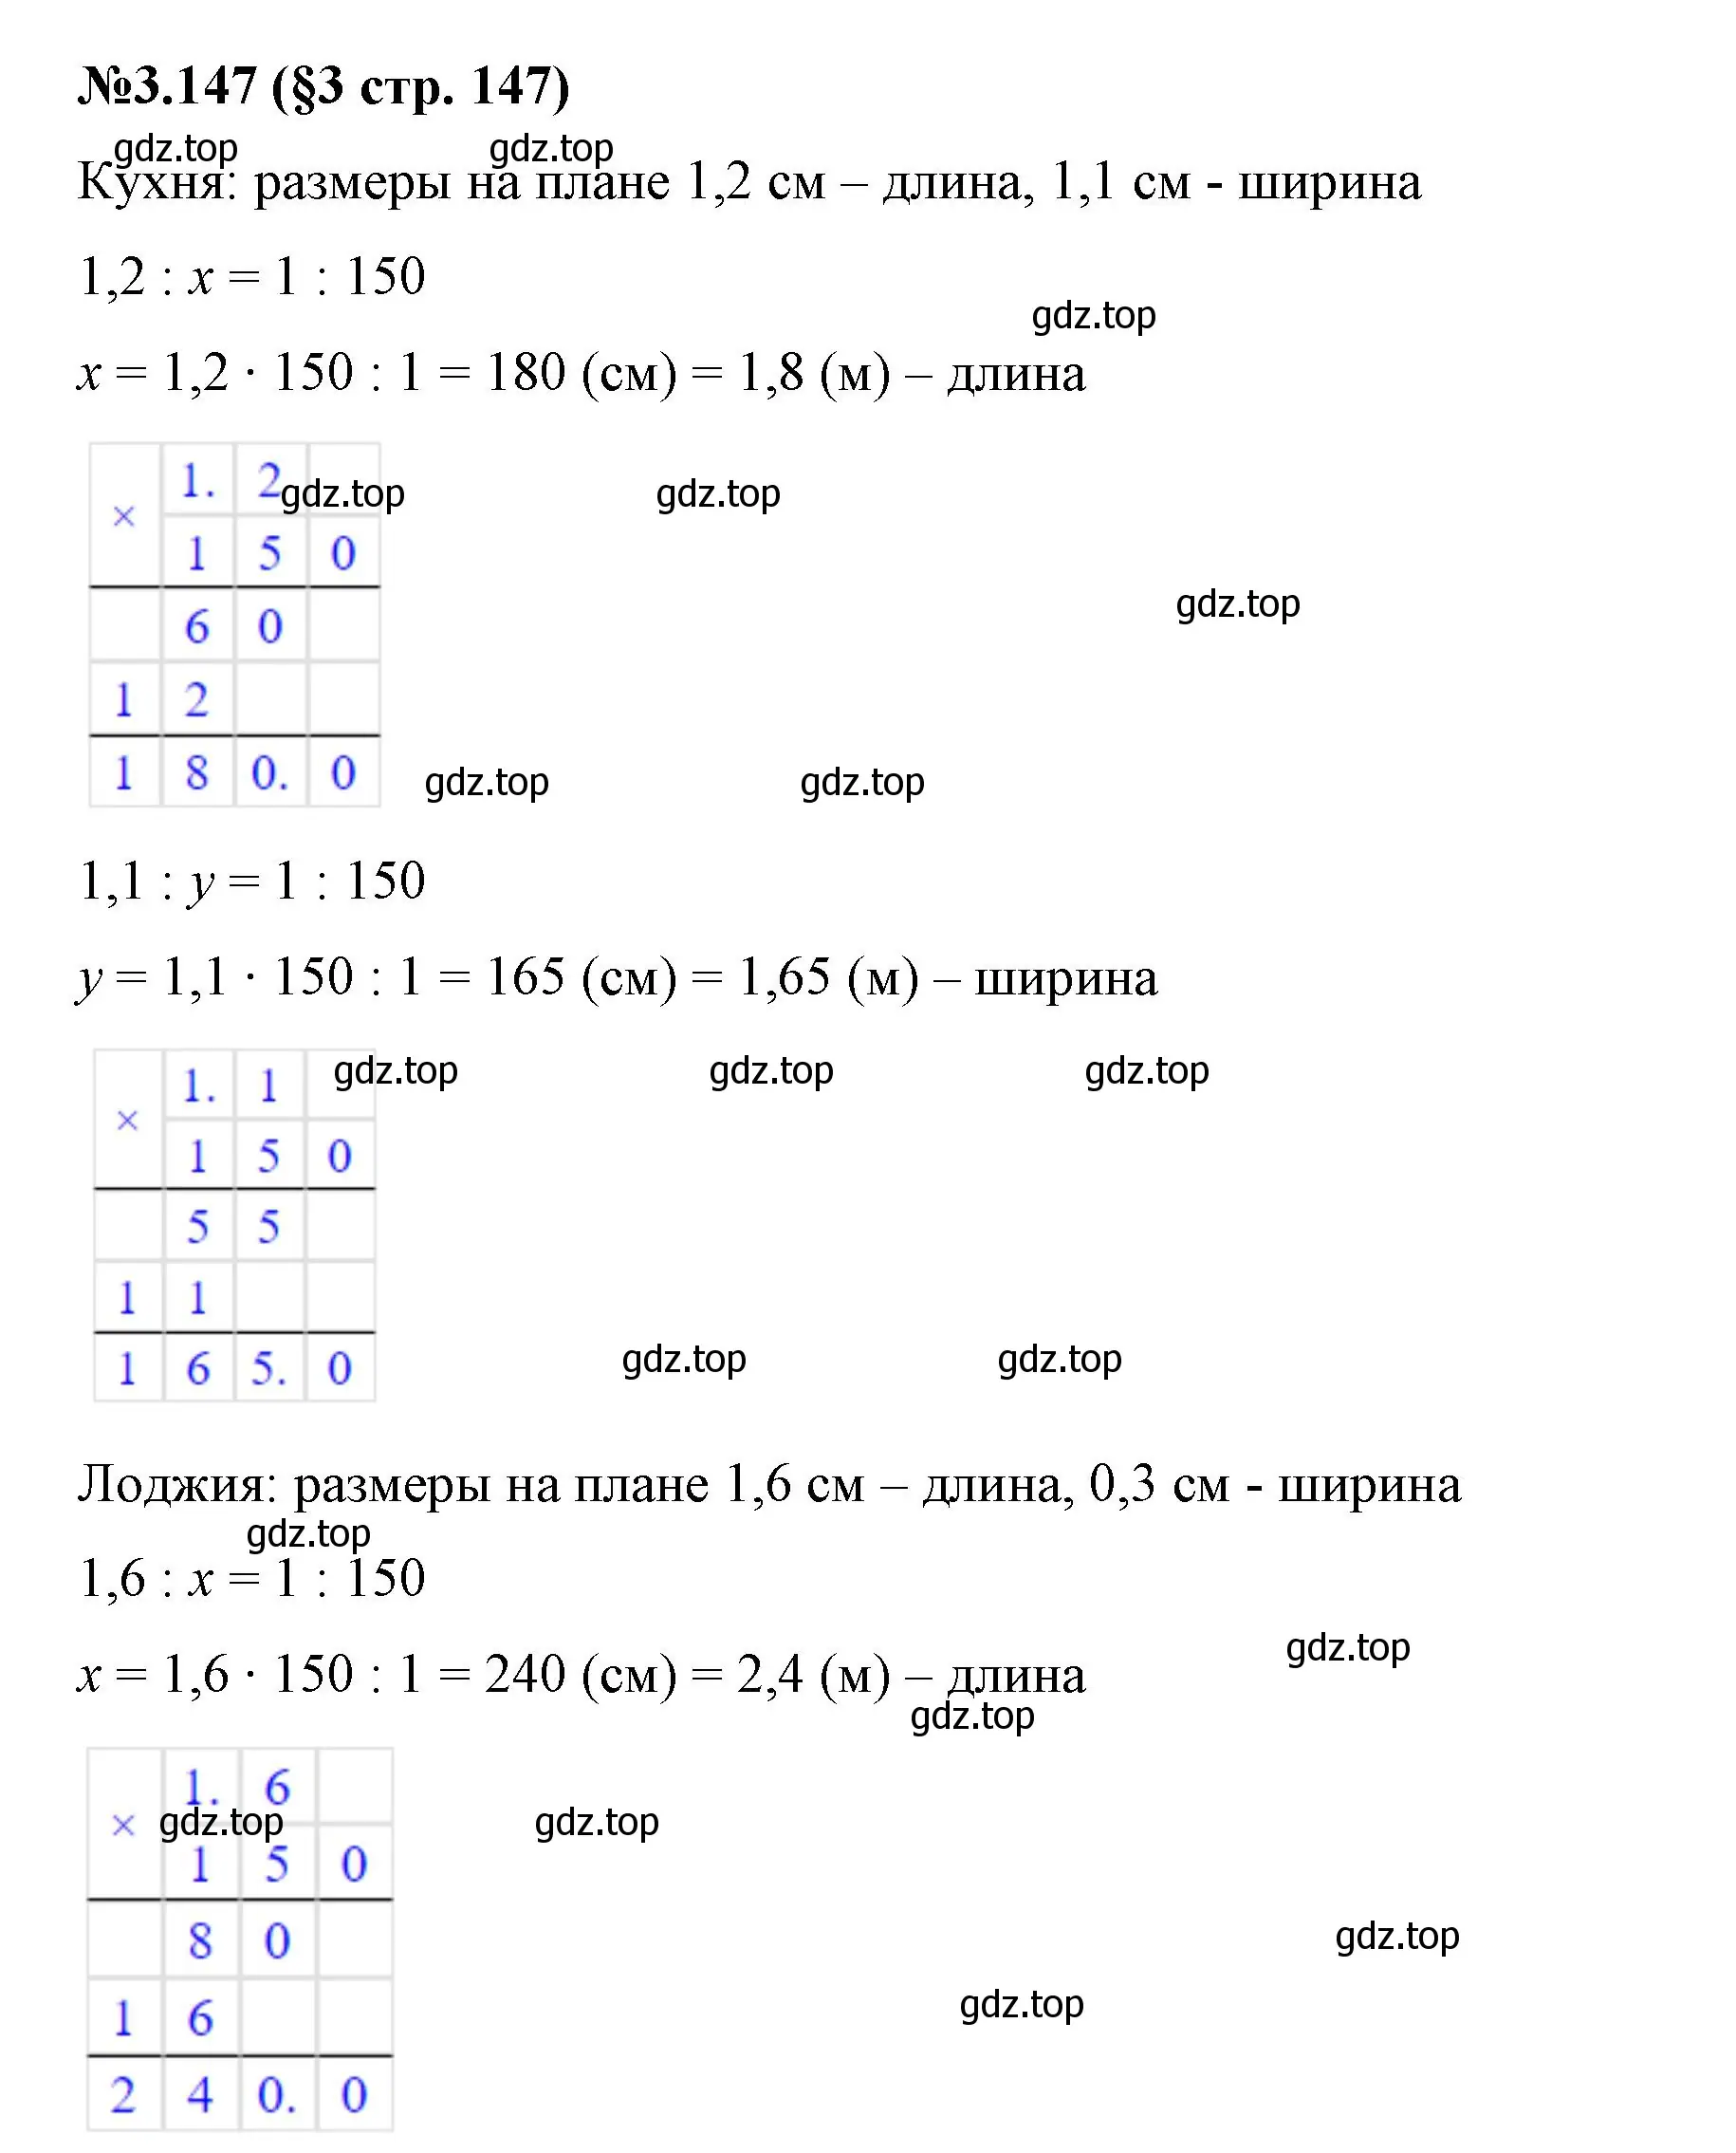 Решение номер 3.147 (страница 147) гдз по математике 6 класс Виленкин, Жохов, учебник 1 часть